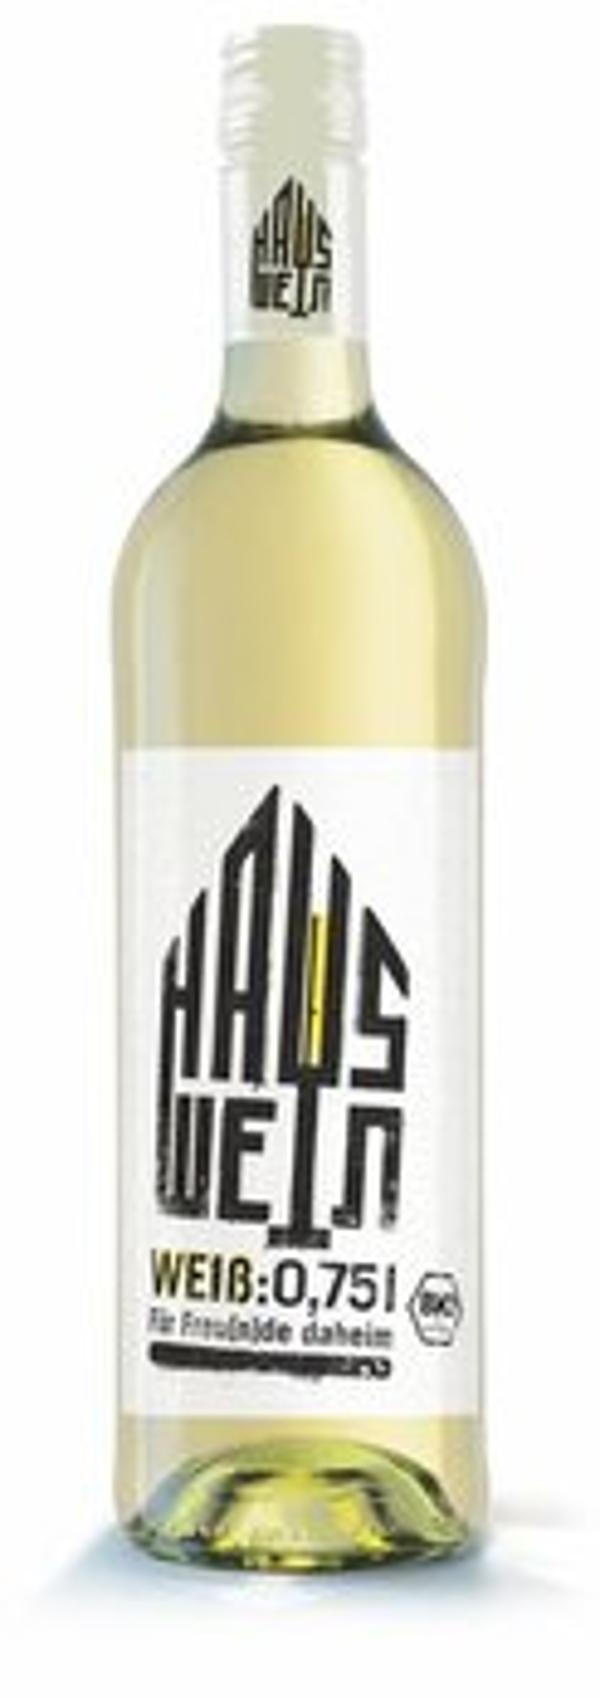 Produktbild von Hauswein weiß 0,75L